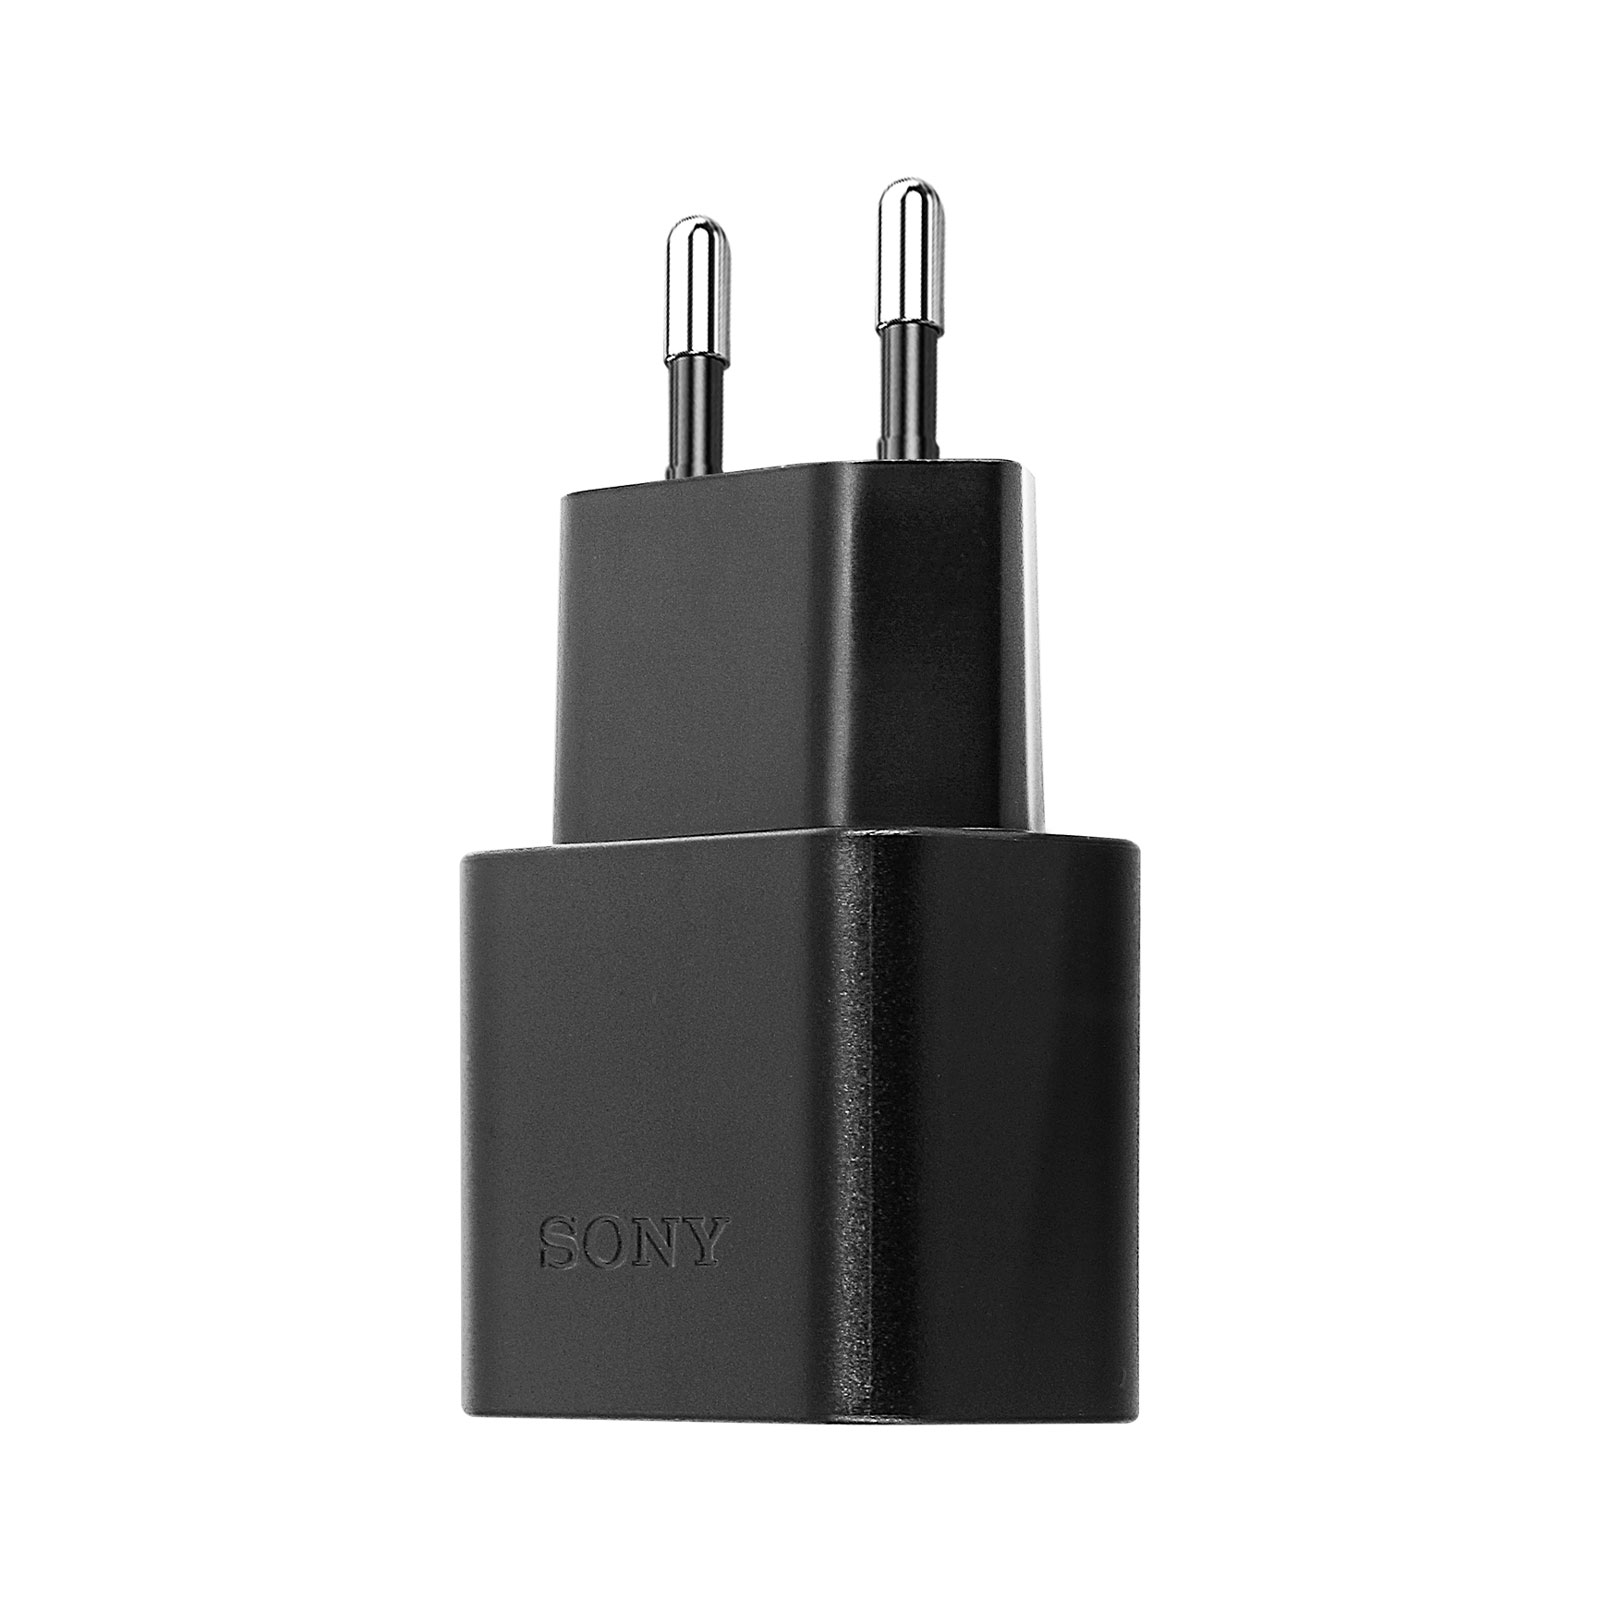 SONY Netzteil, 1.5A USB-C Volt, Schwarz 5 Universal, Netzteile Wand-Ladegerät